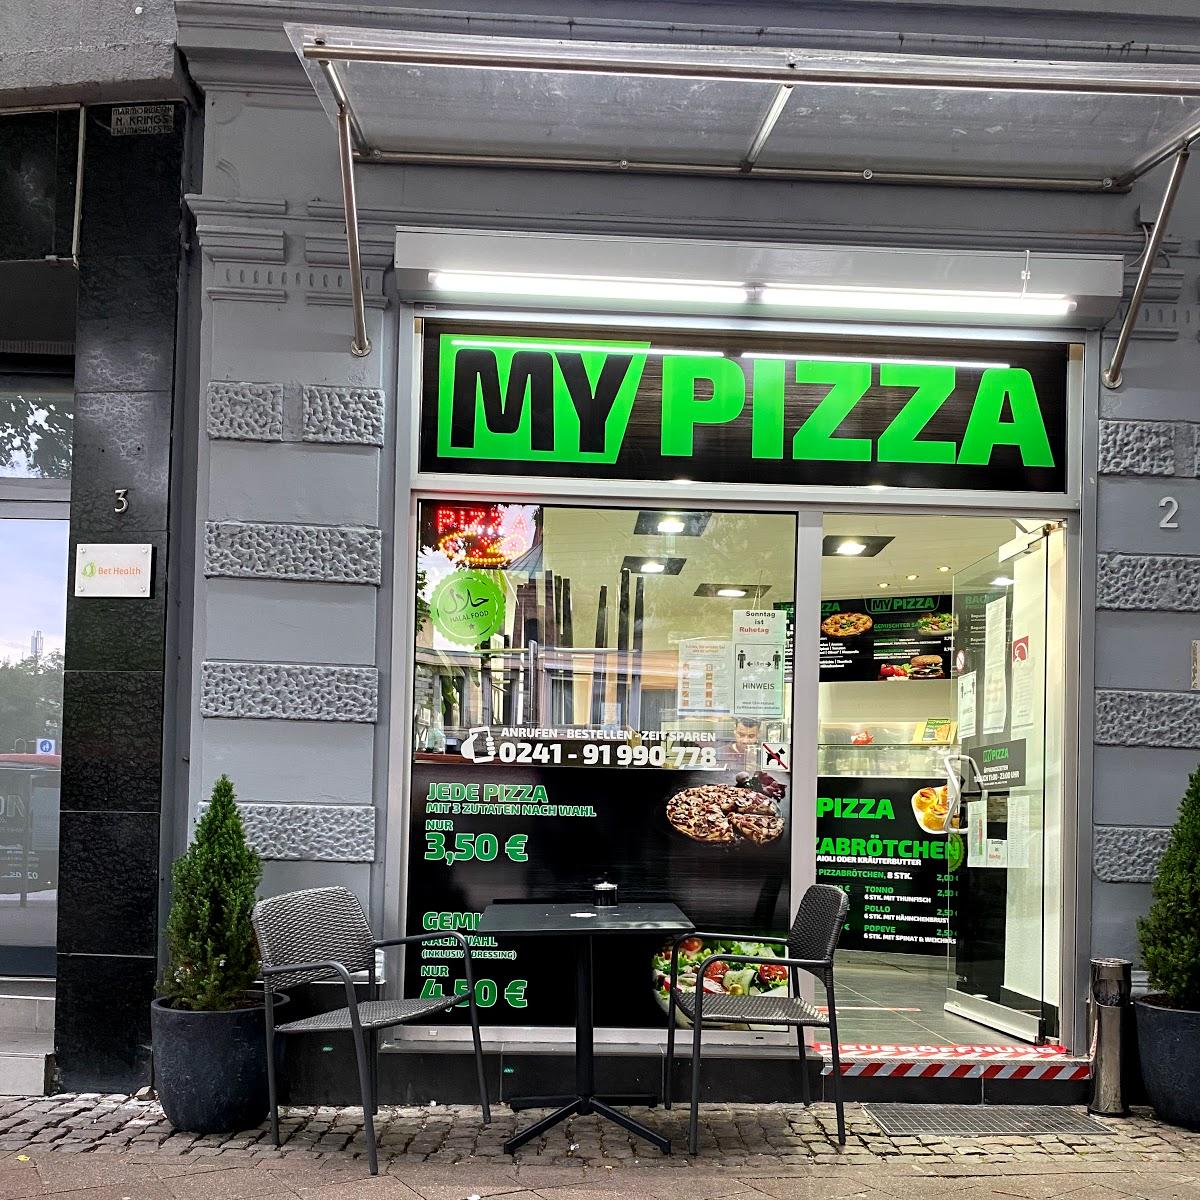 Restaurant "My Pizza" in Aachen